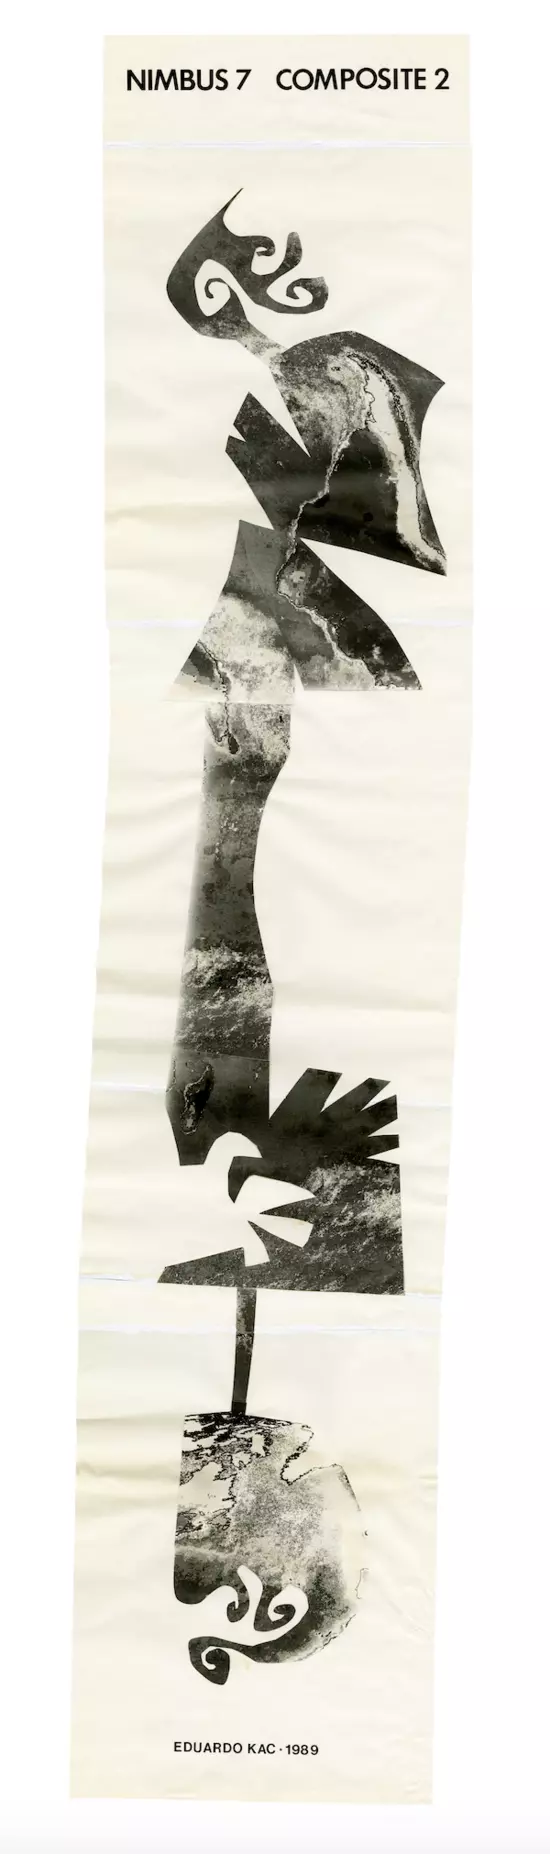 Eduardo Kac, Nimbus 7 Composite, collage on white paper for fax transmission, 40.7"x 8.4" (103,5 x 21,5 cm), 1989.